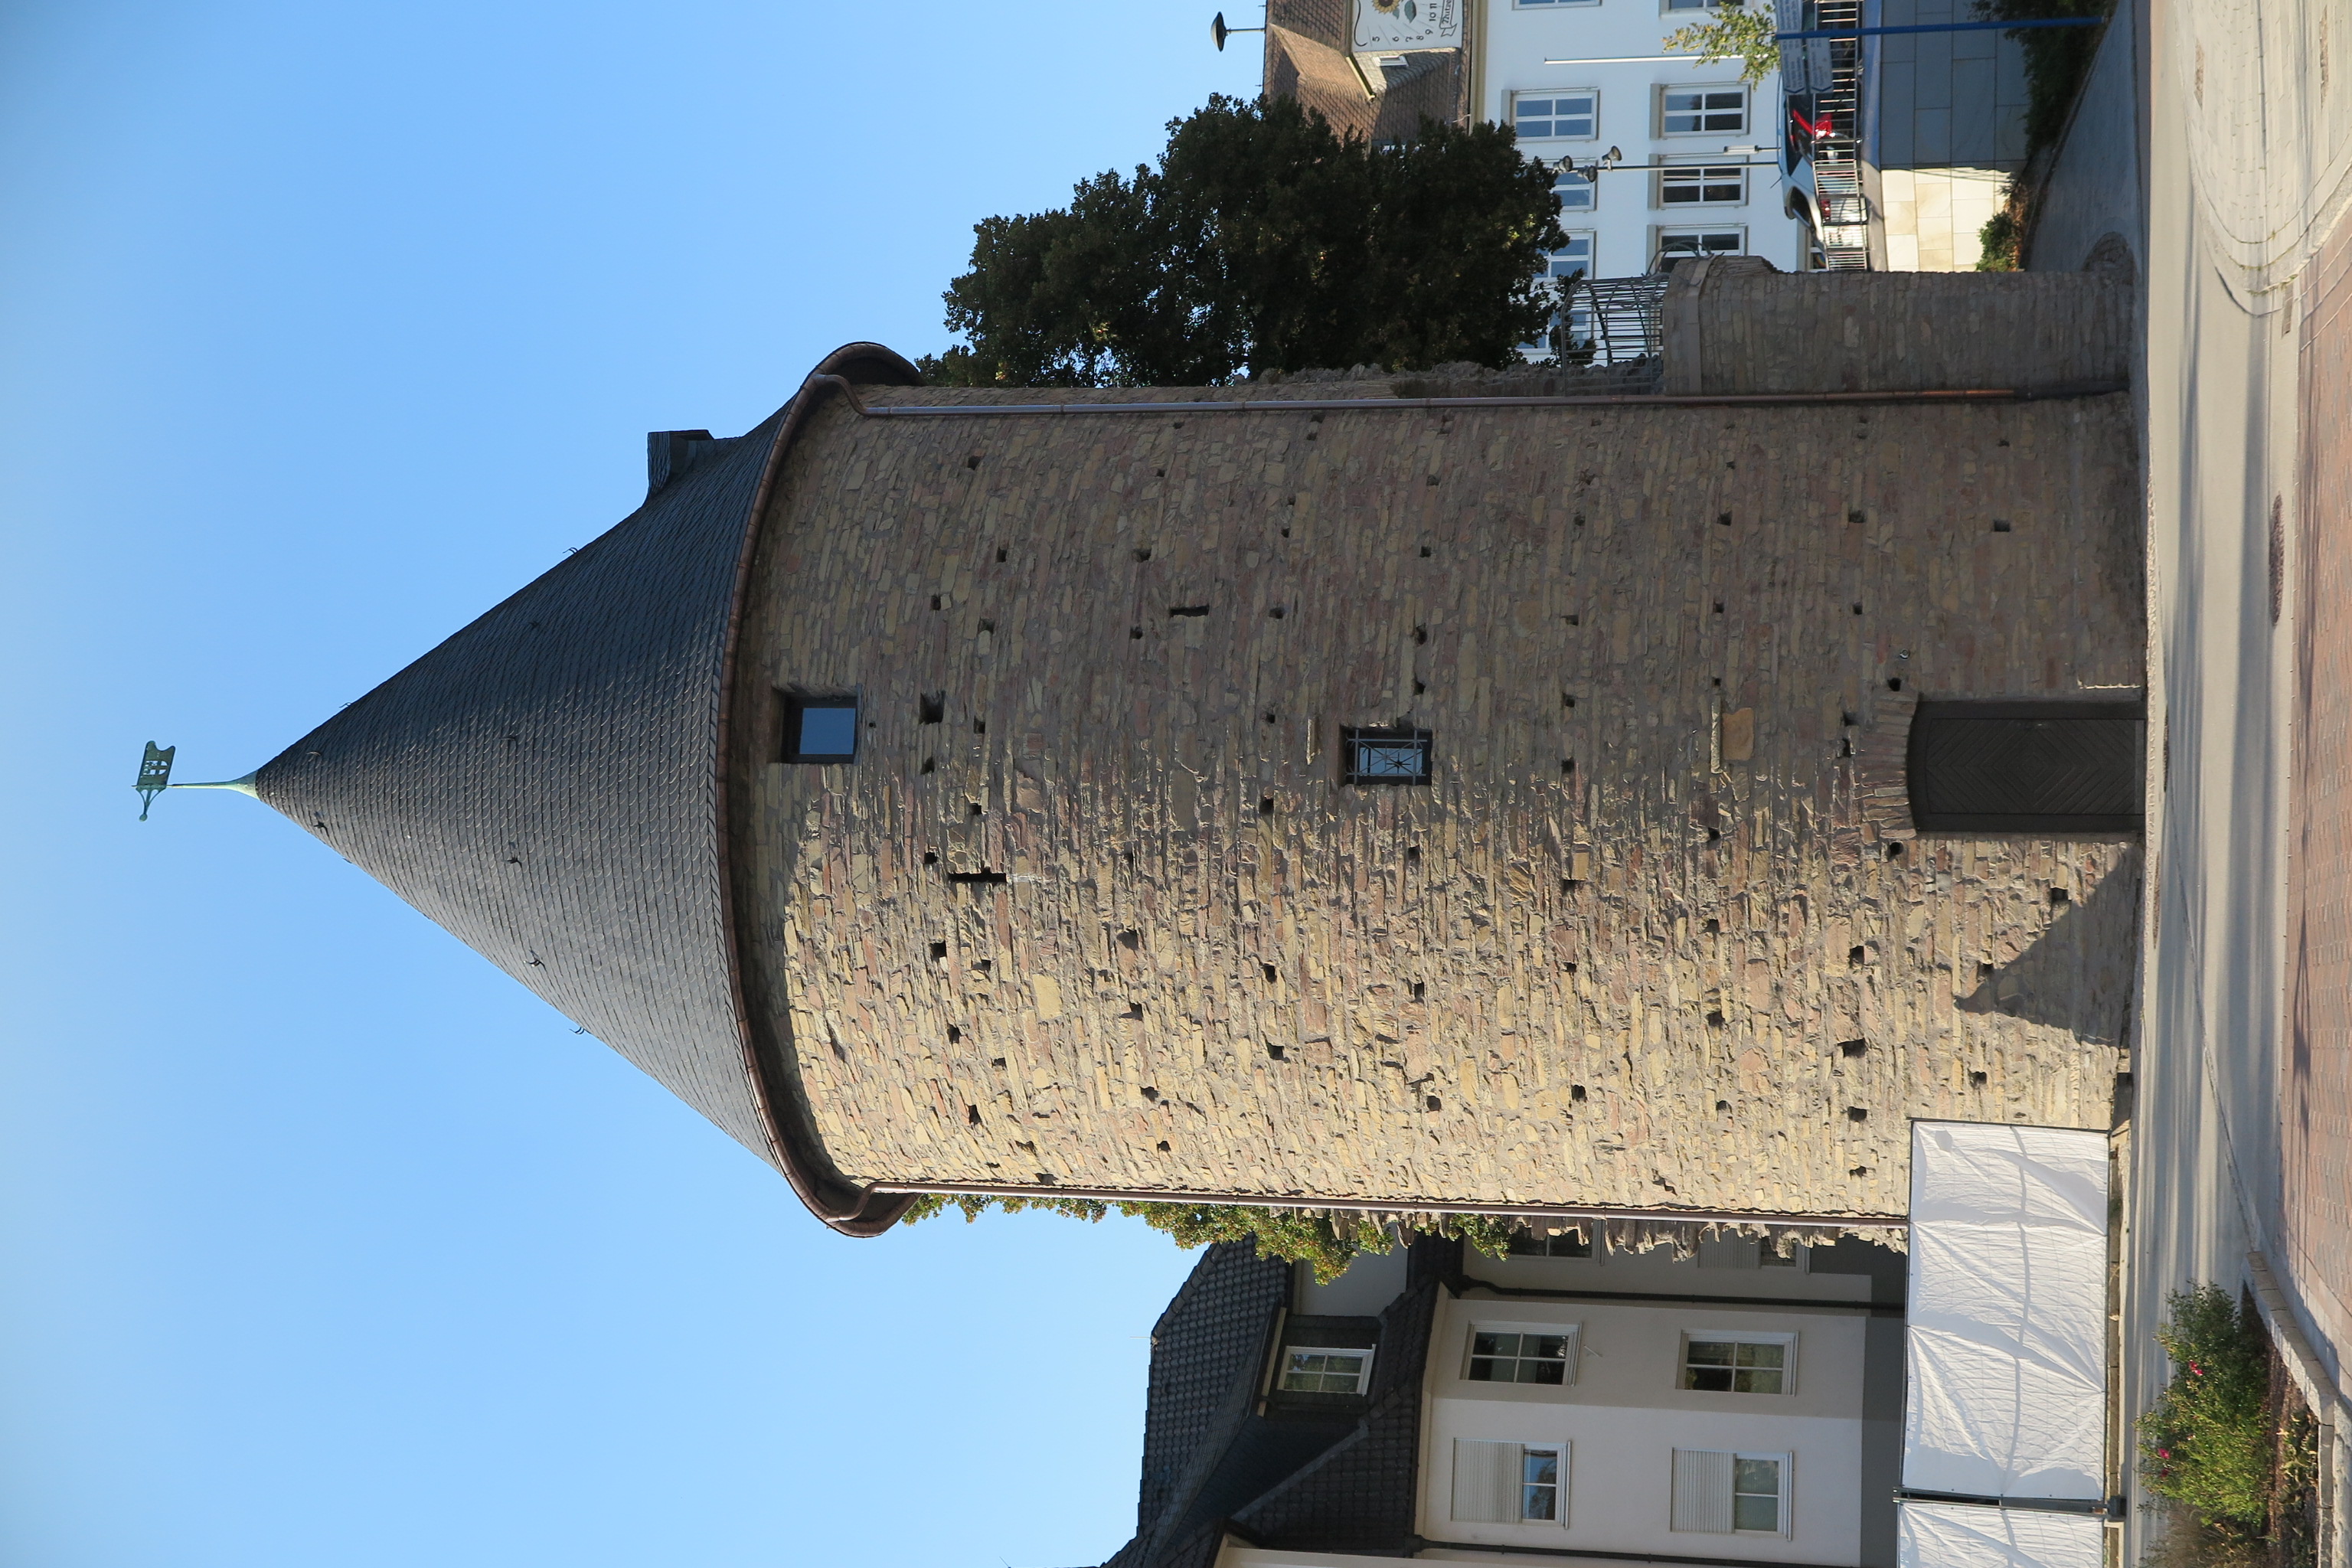 Der Bieketurm ist einer von zwei erhaltenen Türmen der einstigen mittelalterlichen Stadtmauer.